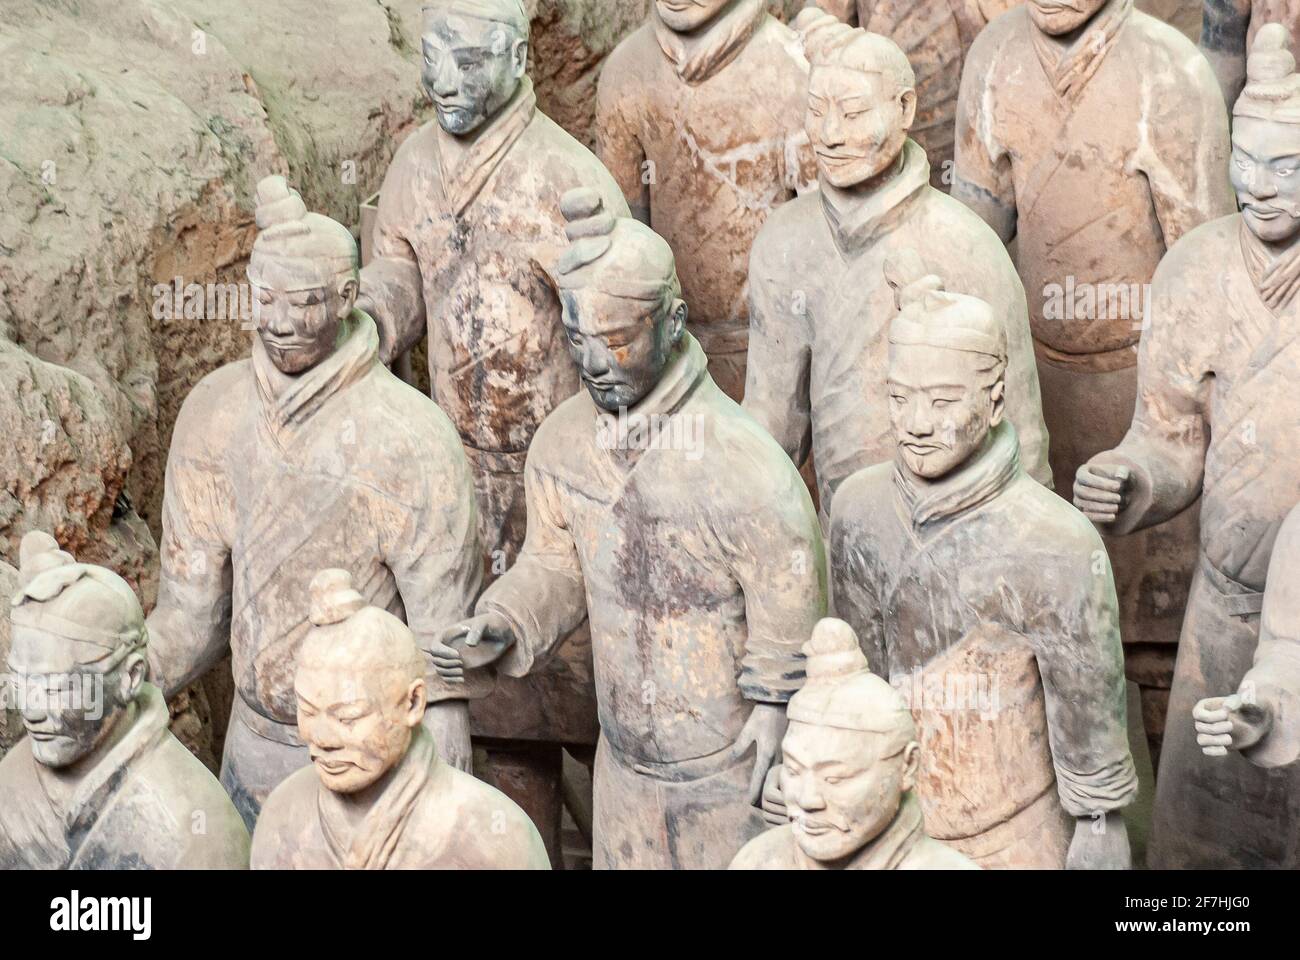 Xian, Cina - 1 maggio 2010: Esercito di terracotta di Qin Shi Huang. Primo piano di statue di soldati in marcia in gruppo. Foto Stock